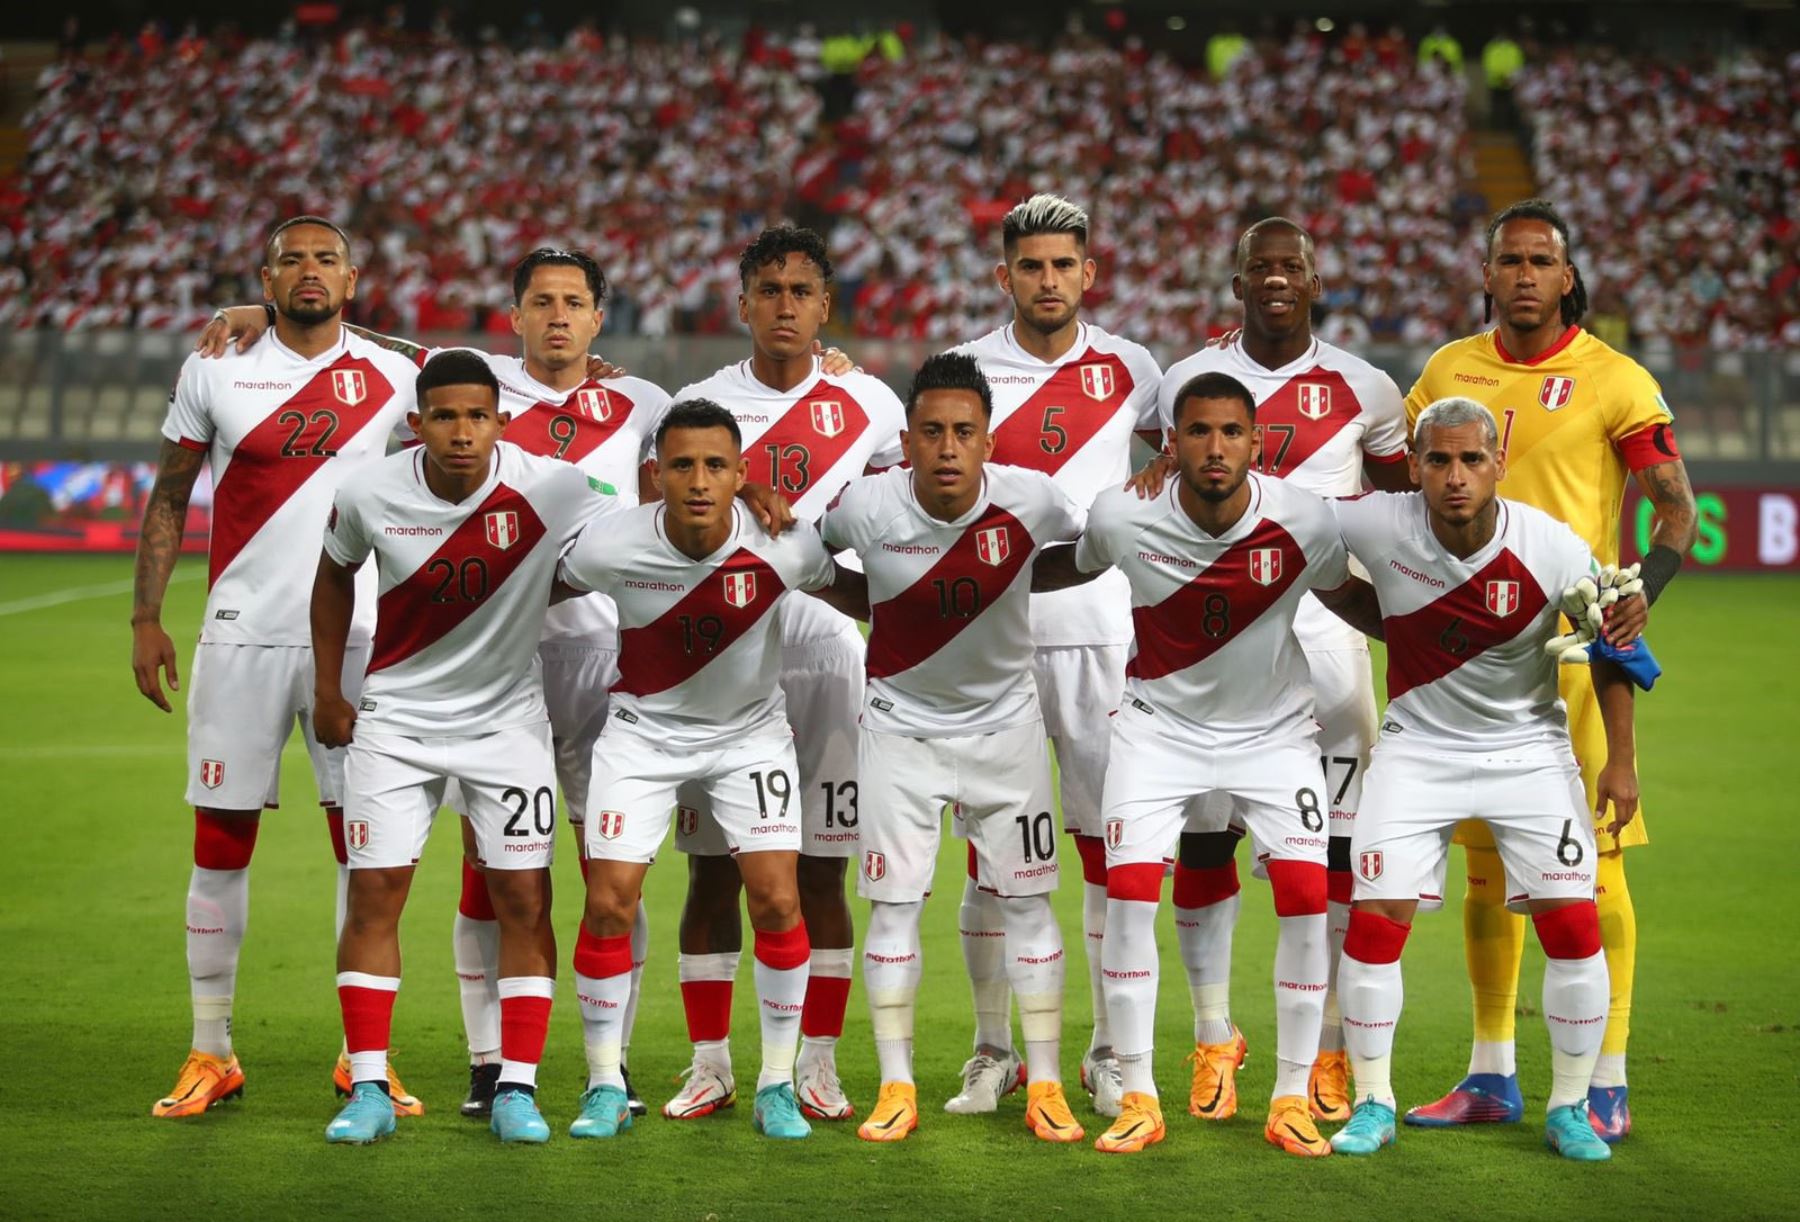 Tirage au sort de la Coupe du monde 2022 au Qatar : le Pérou affronterait la France, le Danemark et la Tunisie |  nouvelles